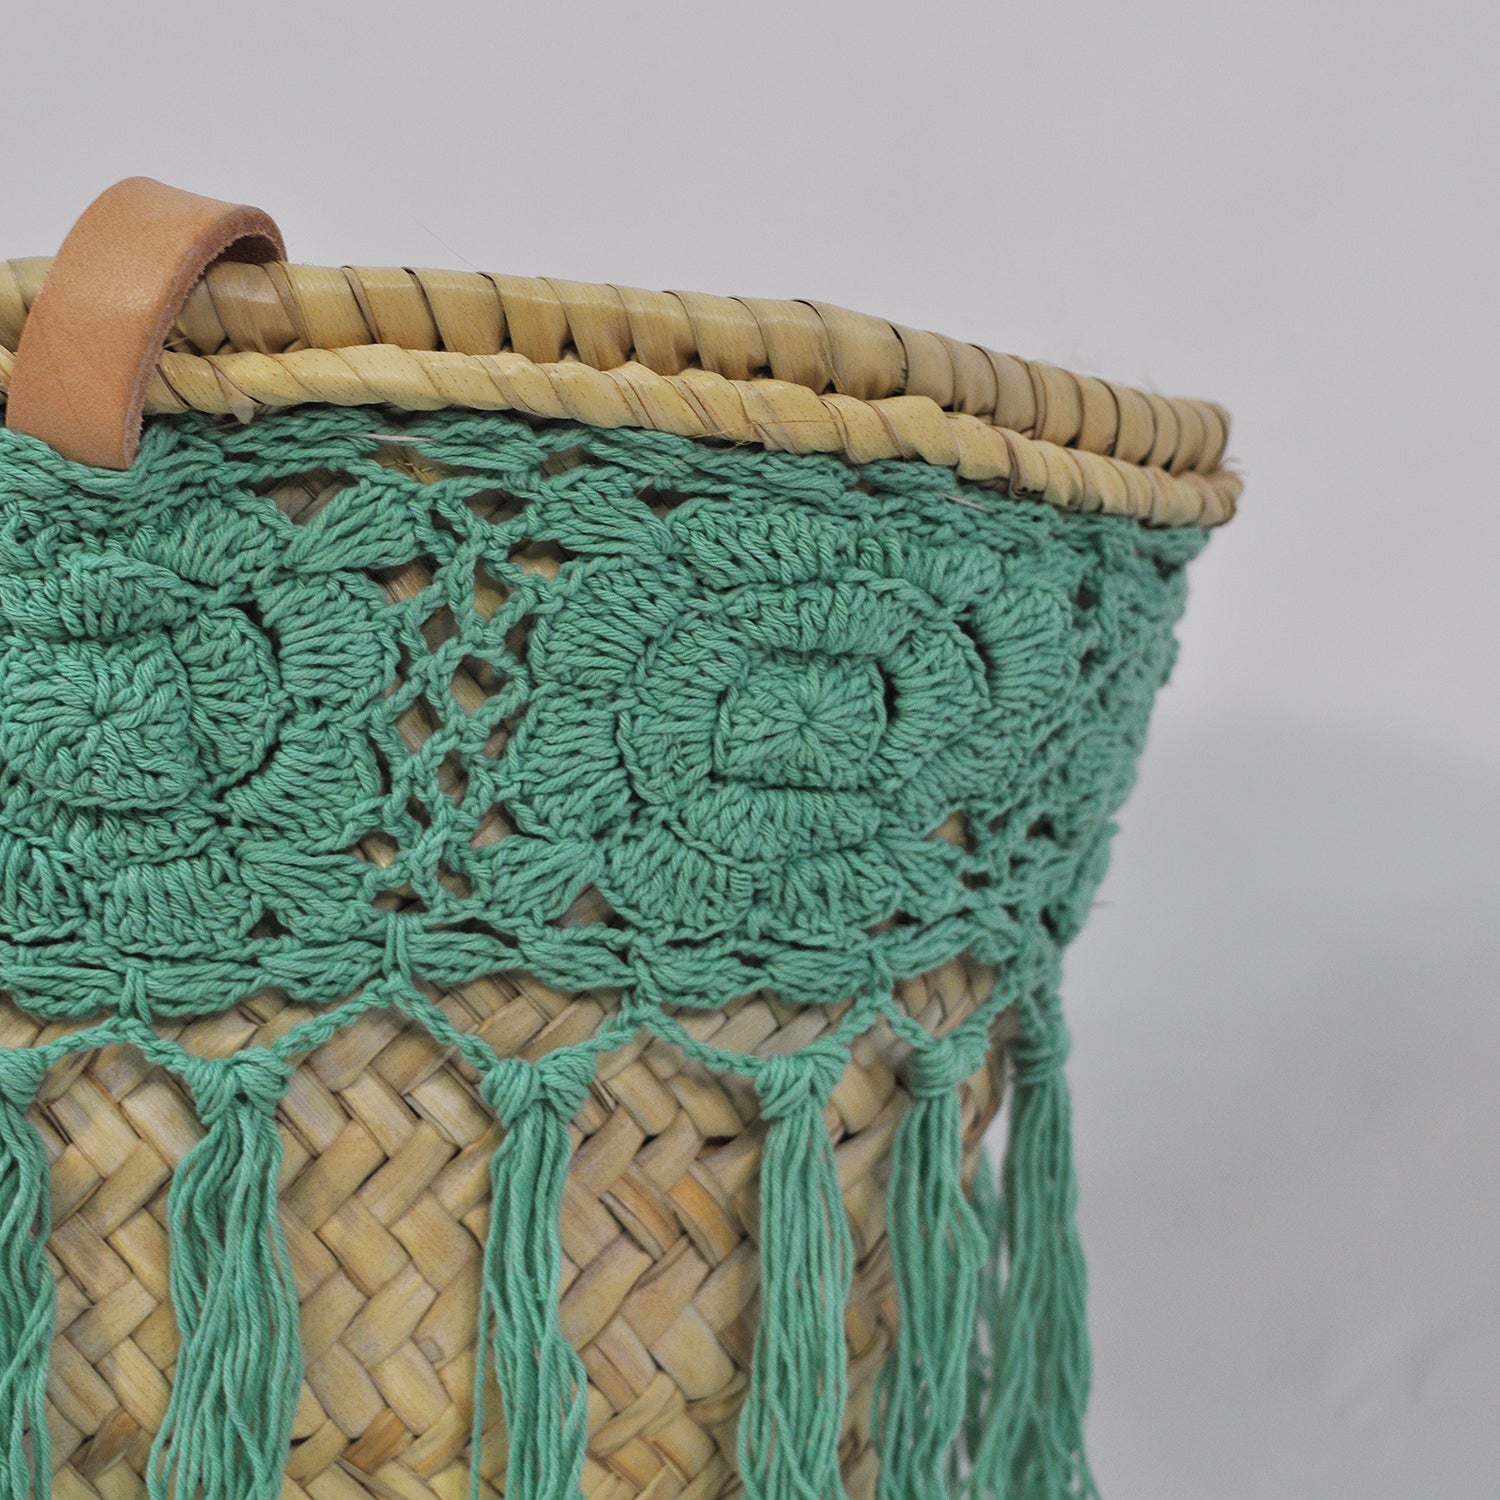 Turquoise crochet basket